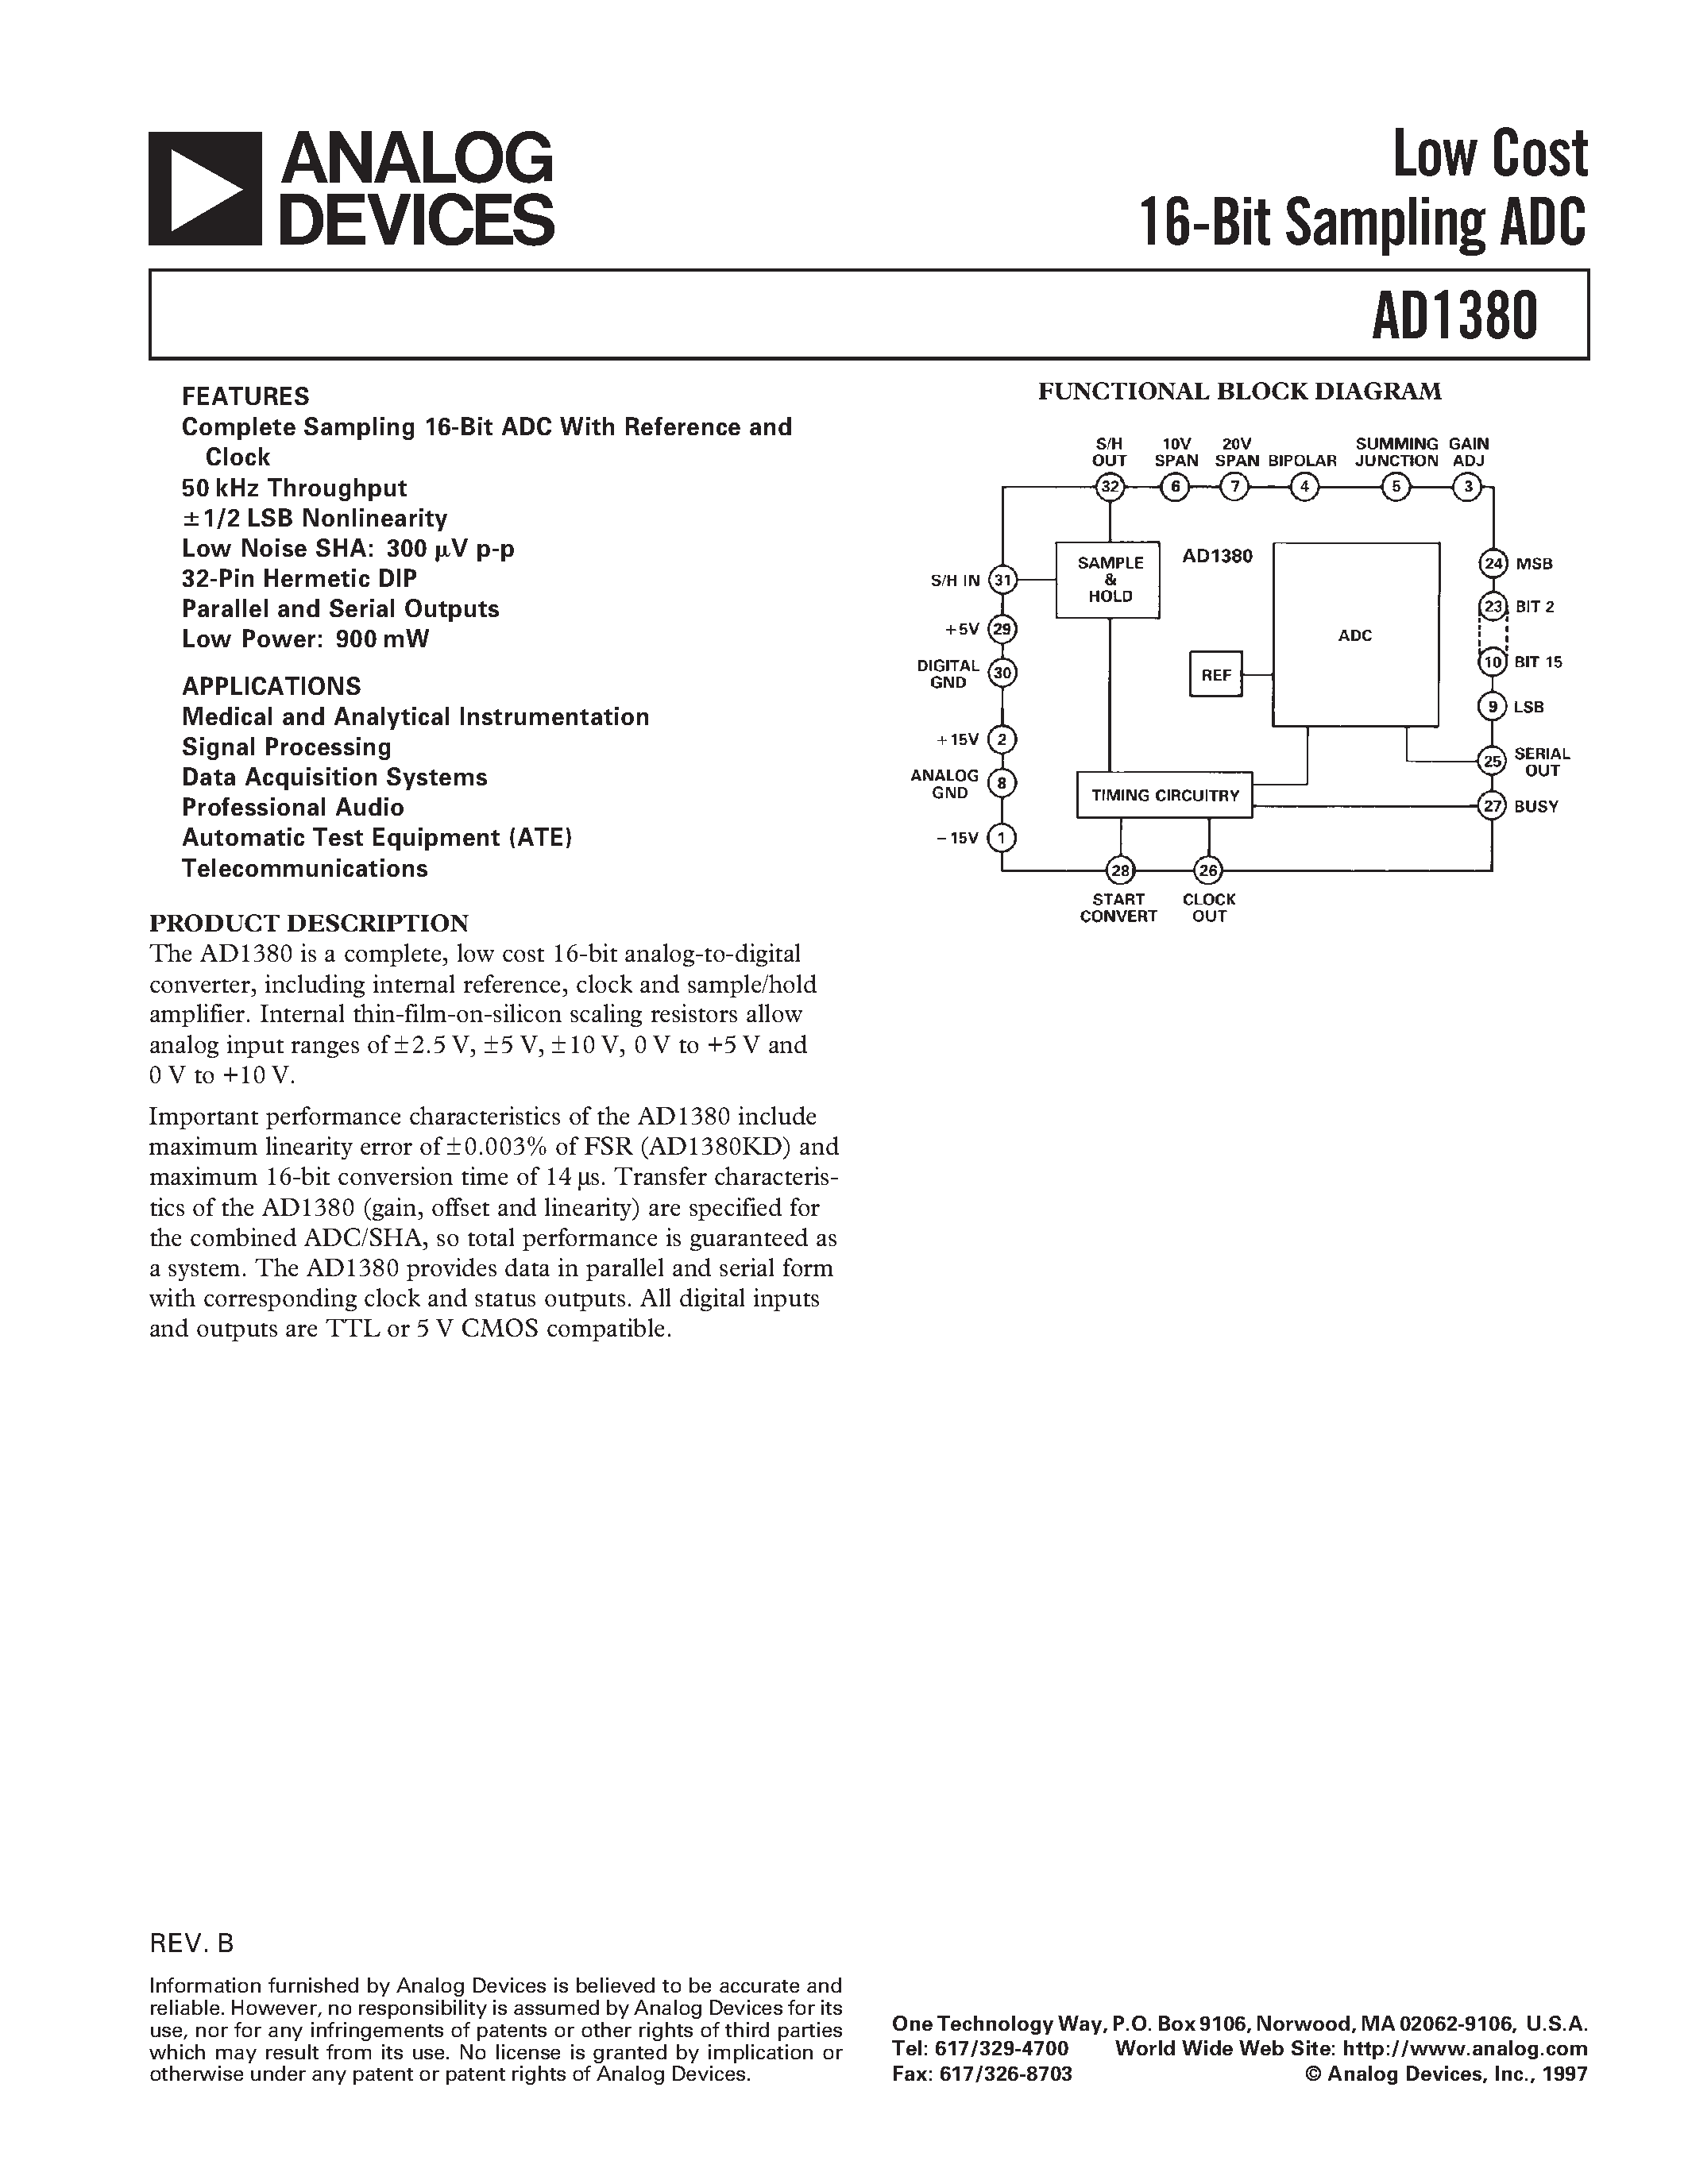 Даташит AD1380JD - Low Cost 16-Bit Sampling ADC страница 1